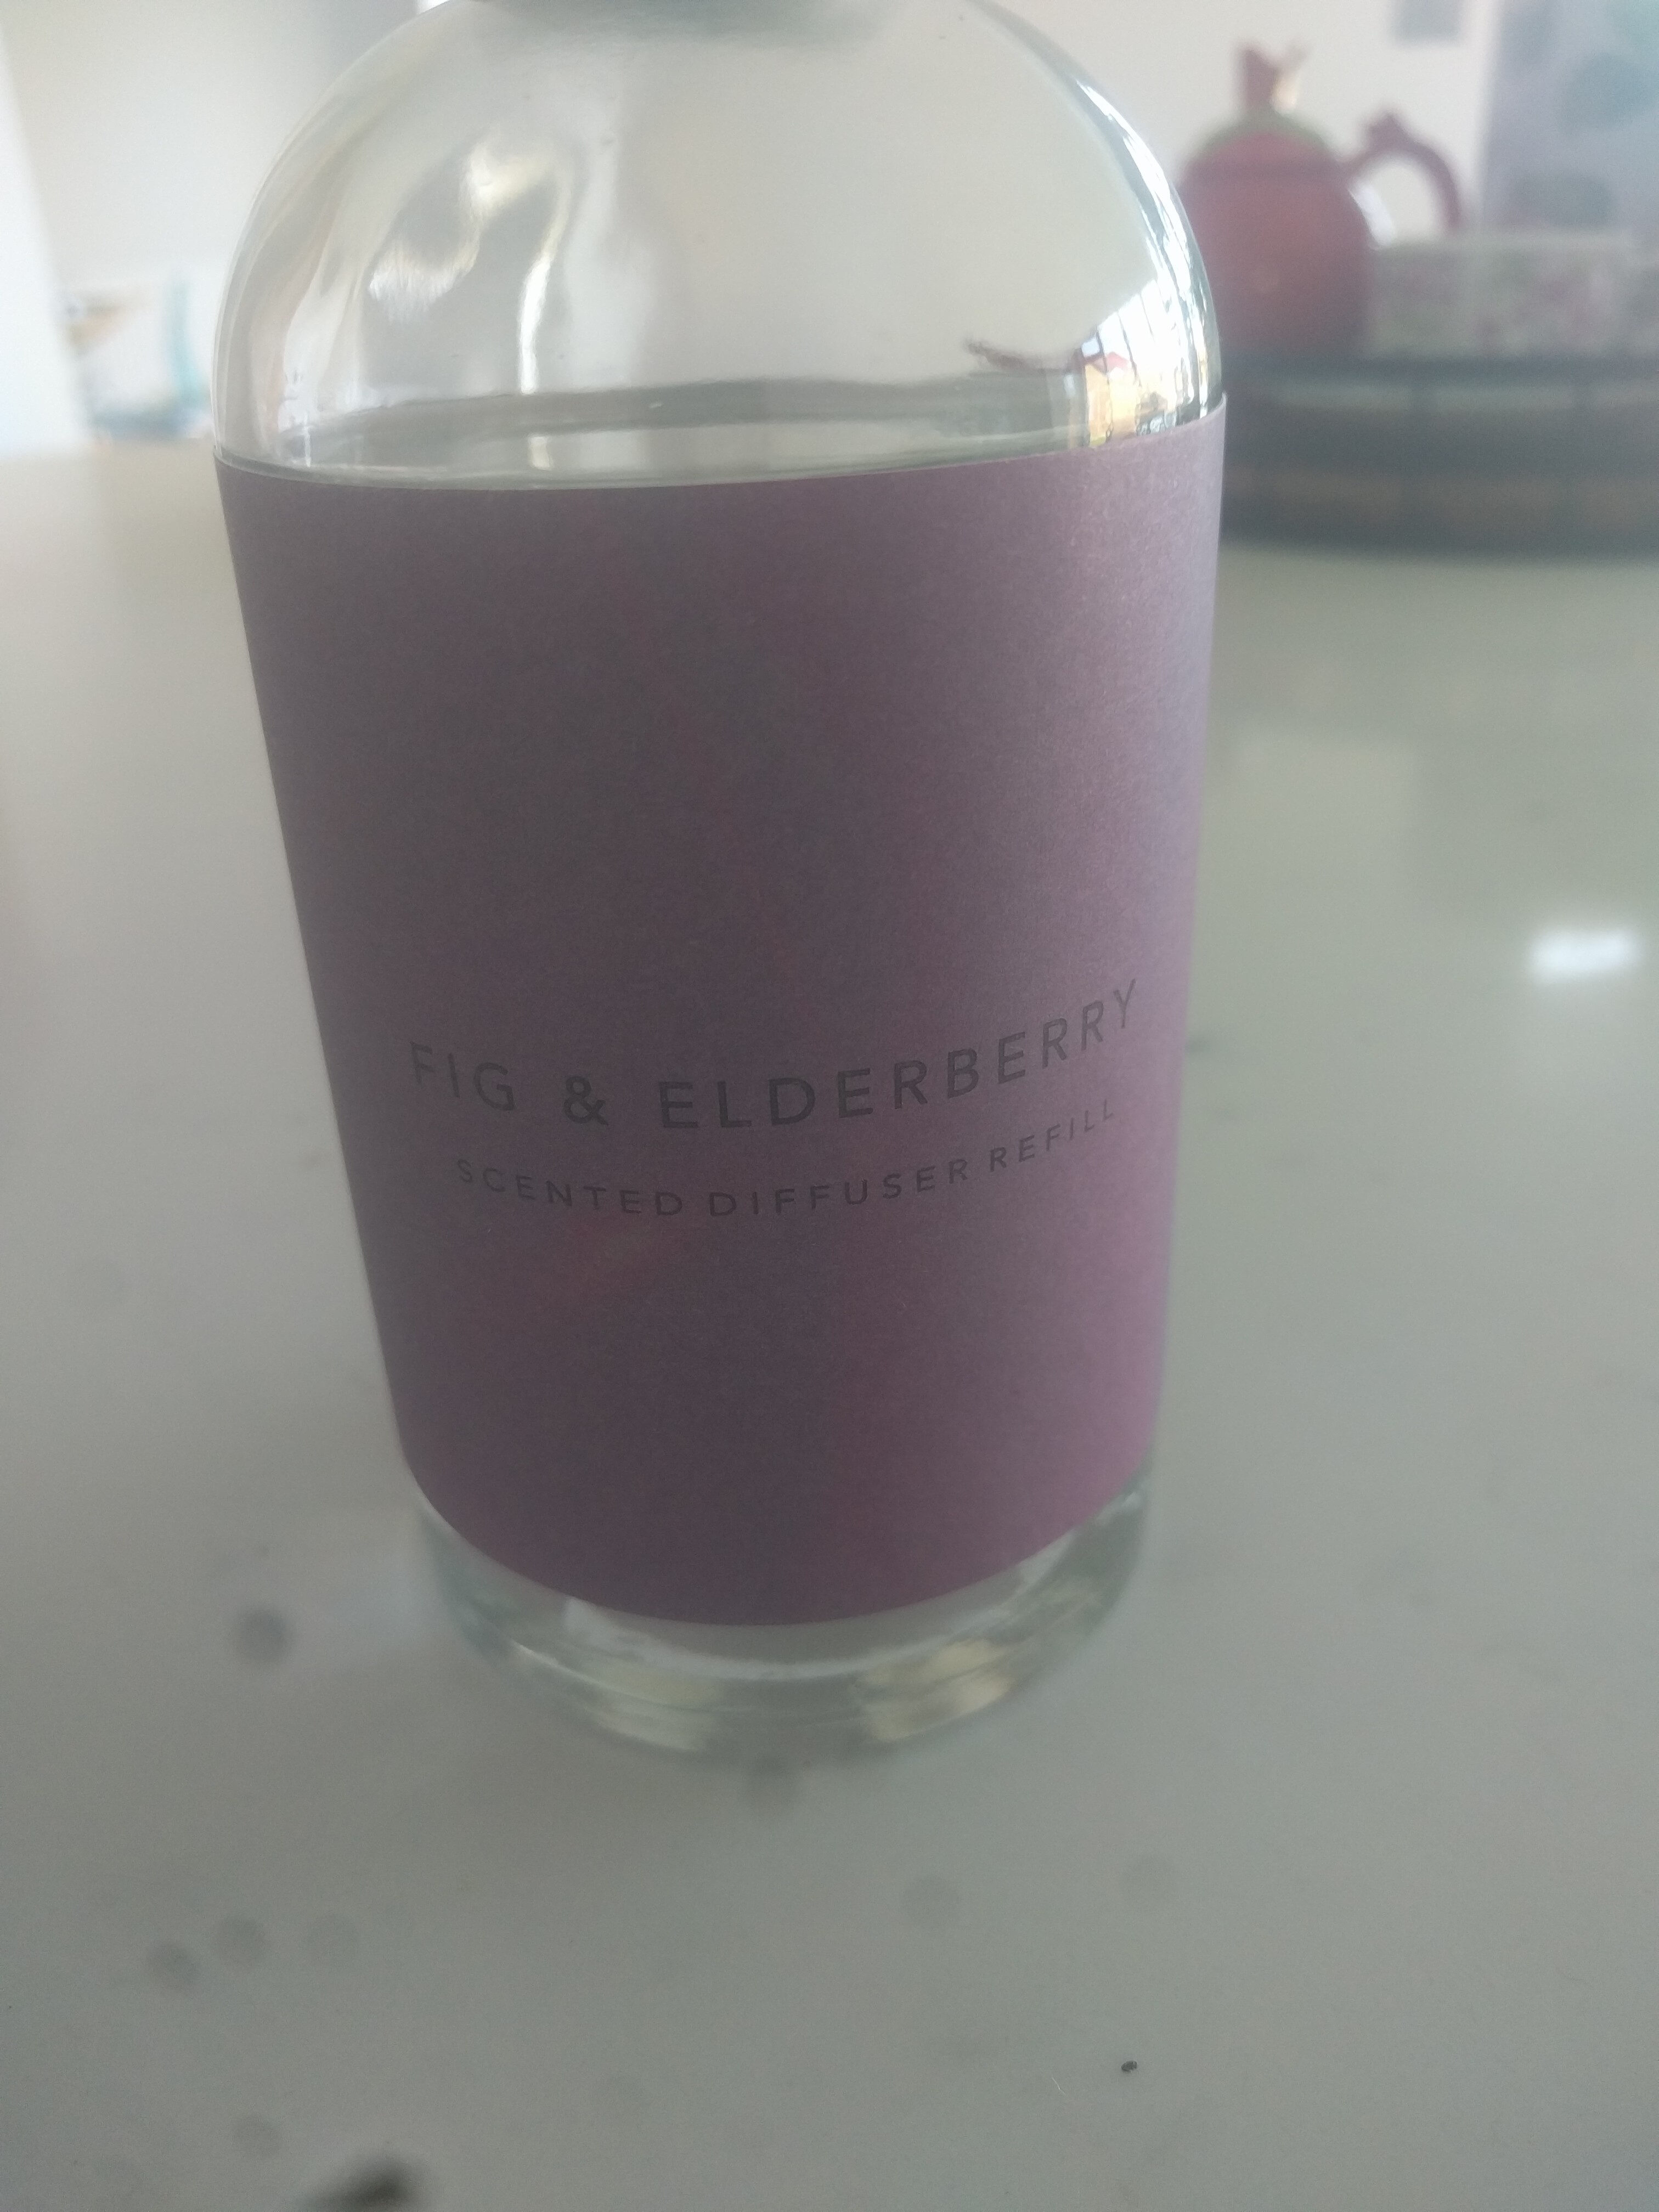 Fig & Elderberry - Product - en